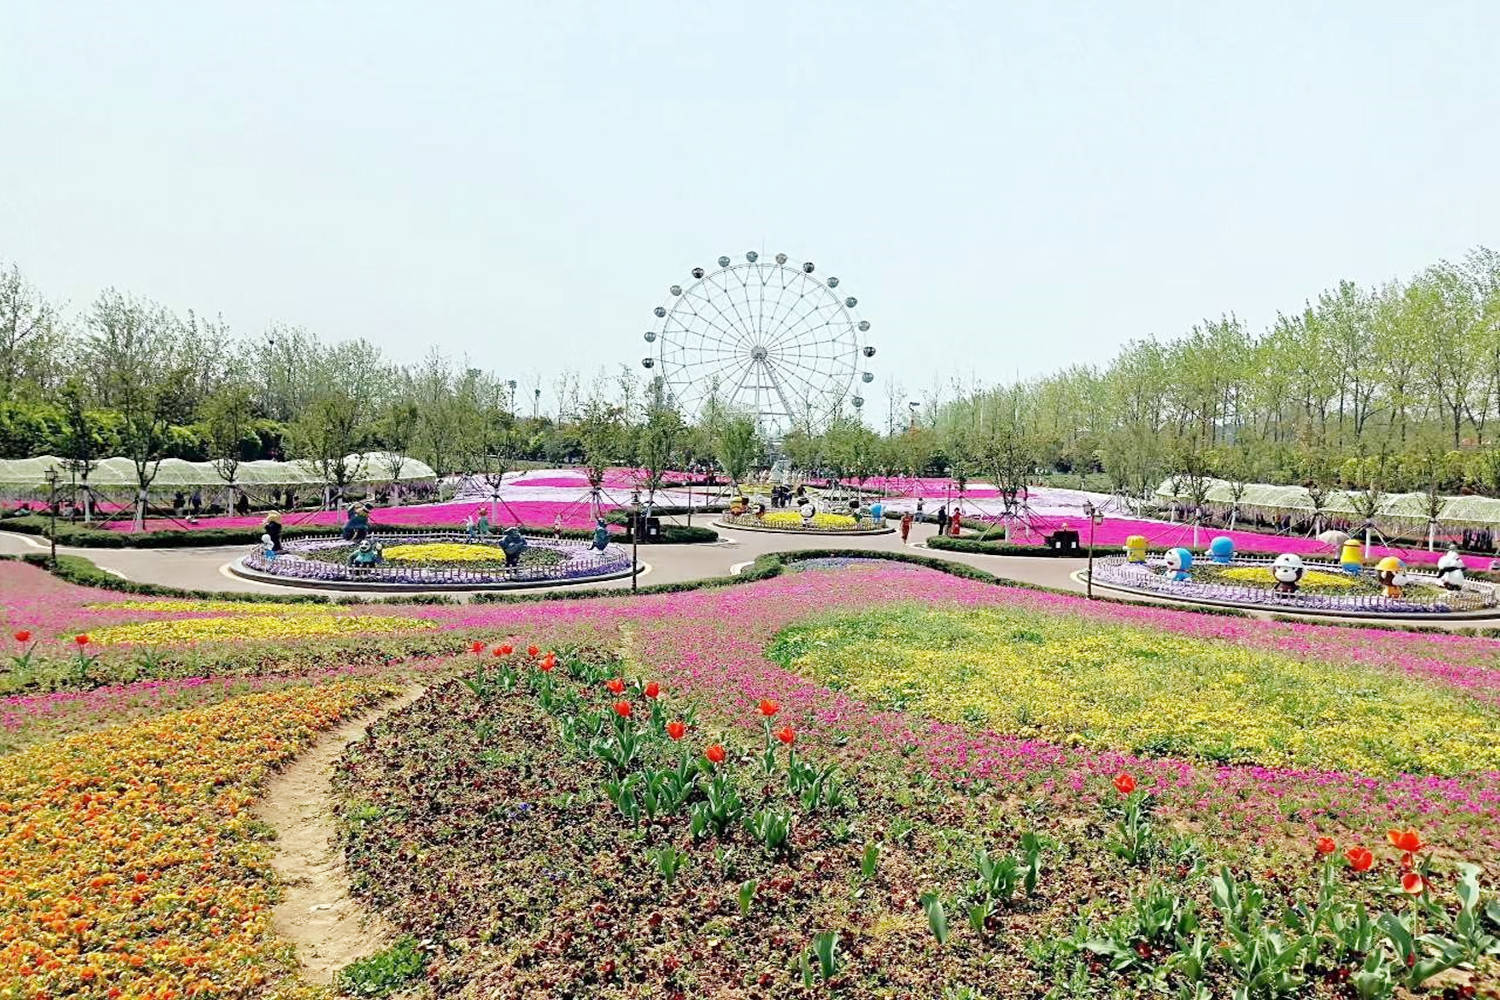 原创南京的雨发生态园有哪些游乐项目?它北依老山,南临长江